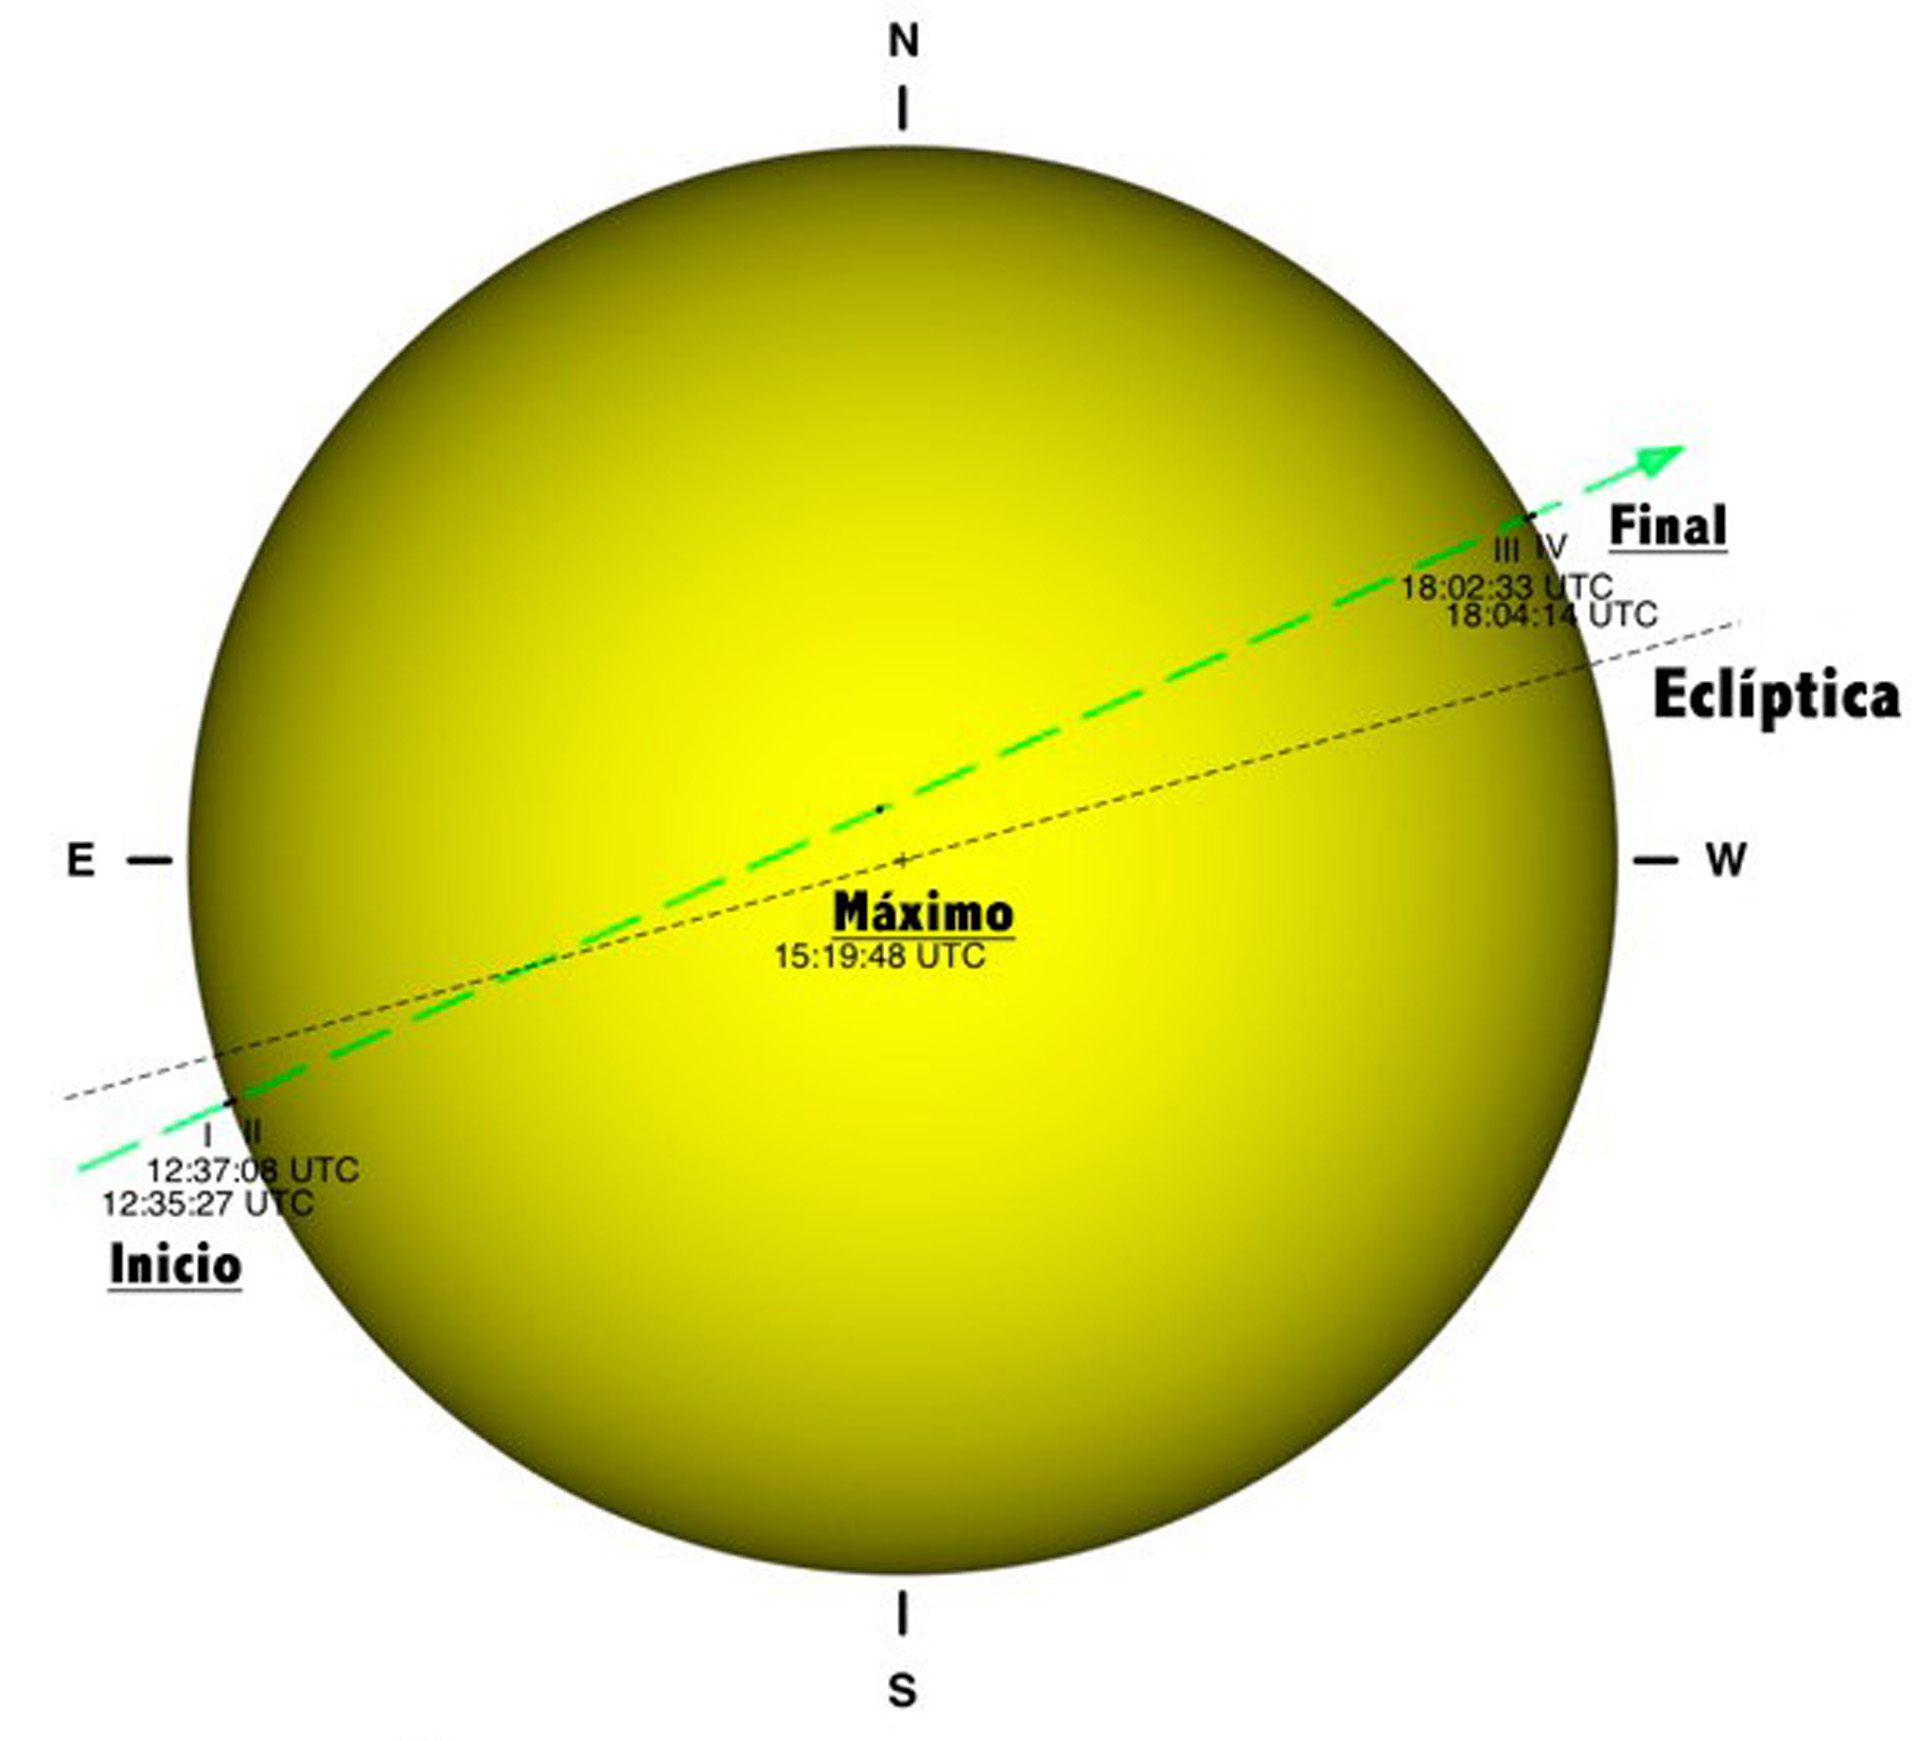 Солнце соединение солнце транзит. Транзит Меркурия по диску солнца. Транзит Меркурия через солнце. Транзит Меркурия по диску солнца 11 ноября. Прохождение Меркурия по диску солнца.